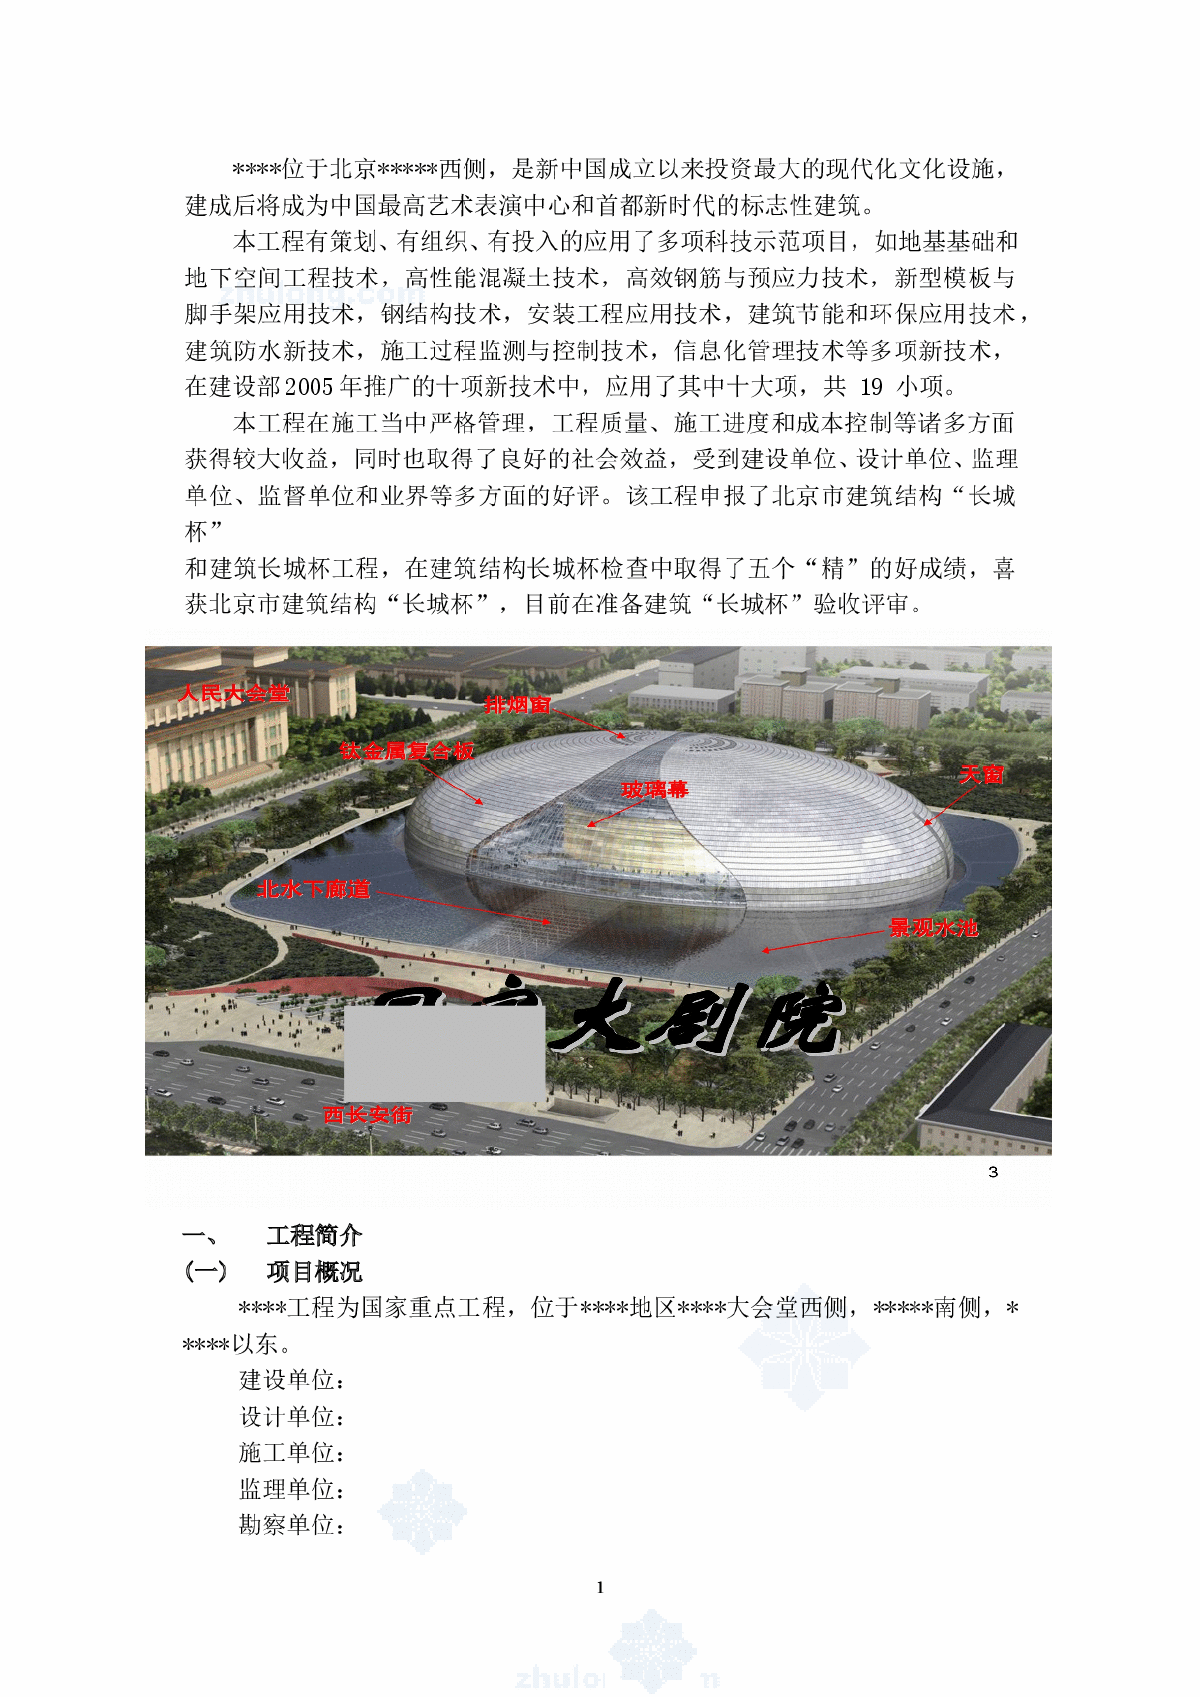 北京某大型剧院新技术应用示范工程汇报材料-图一